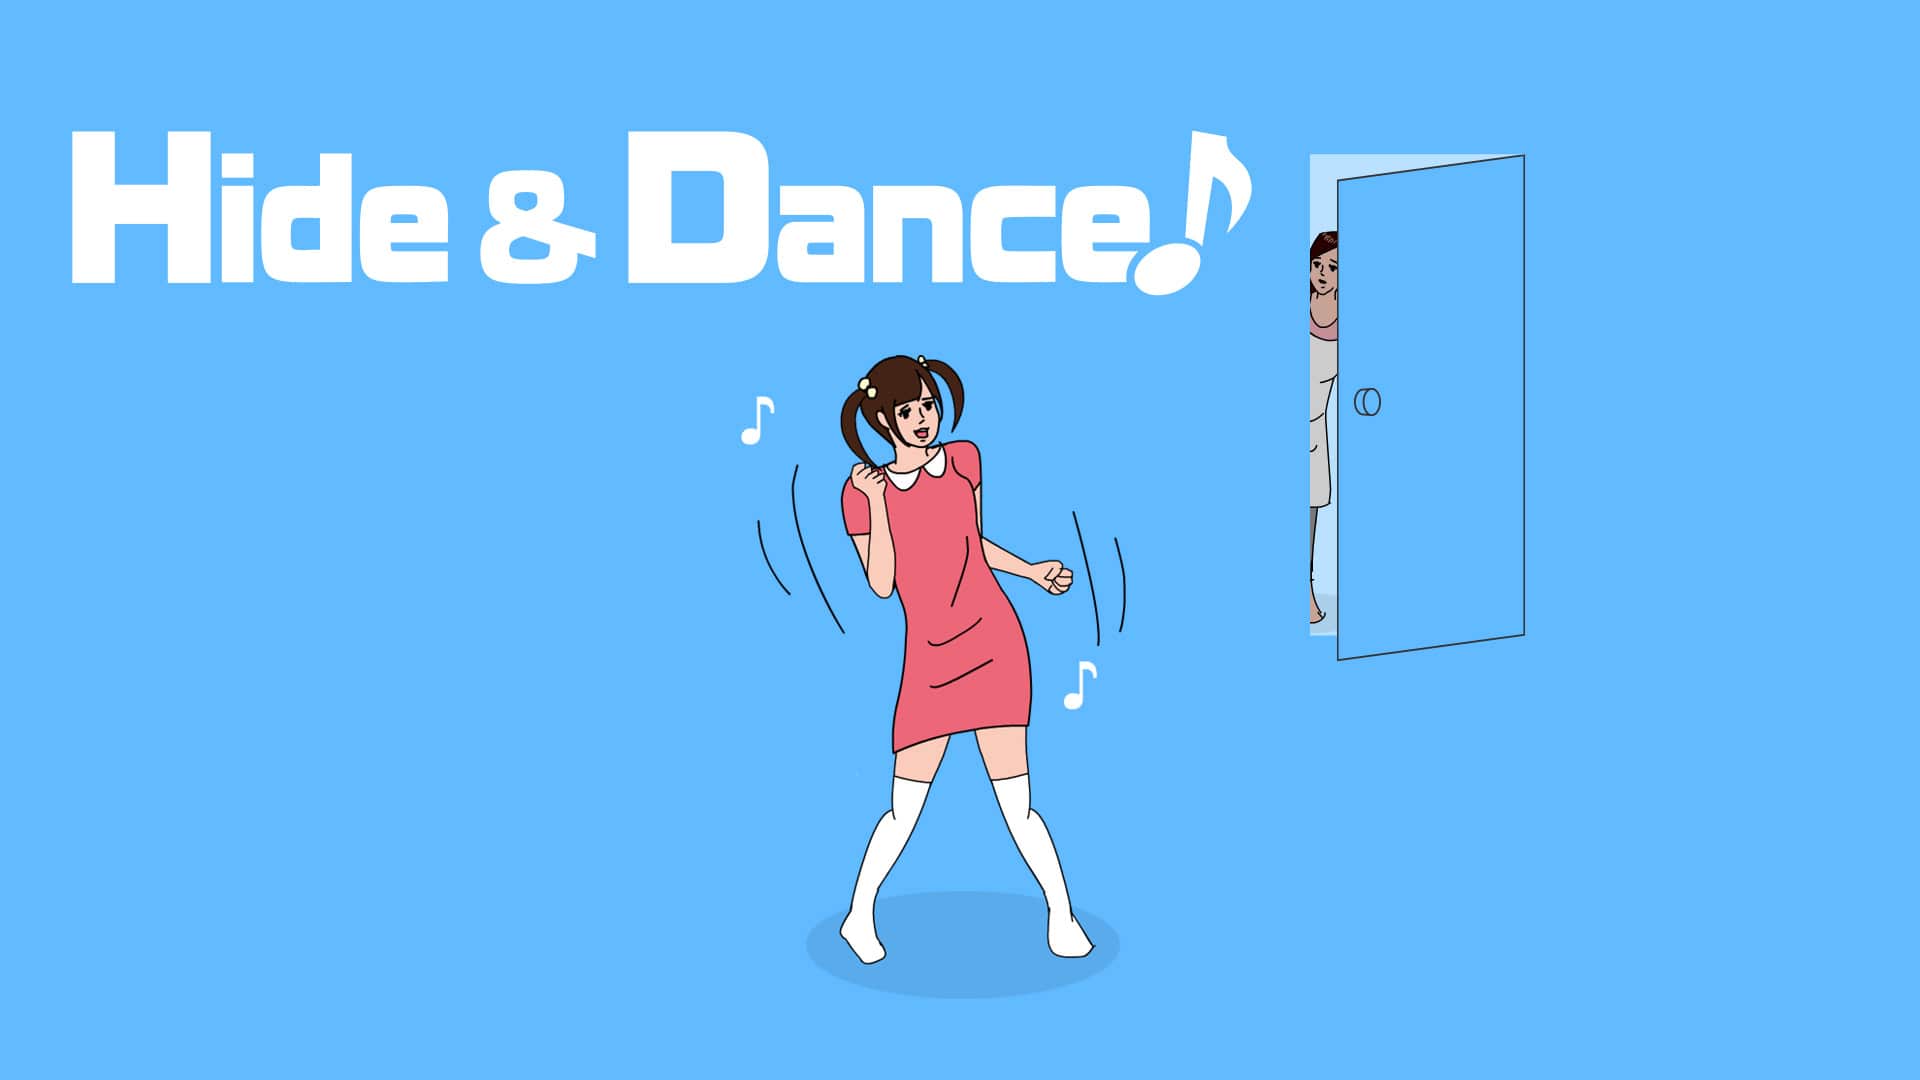 Hide & Dance! celebra su lanzamiento en Nintendo Switch con este tráiler